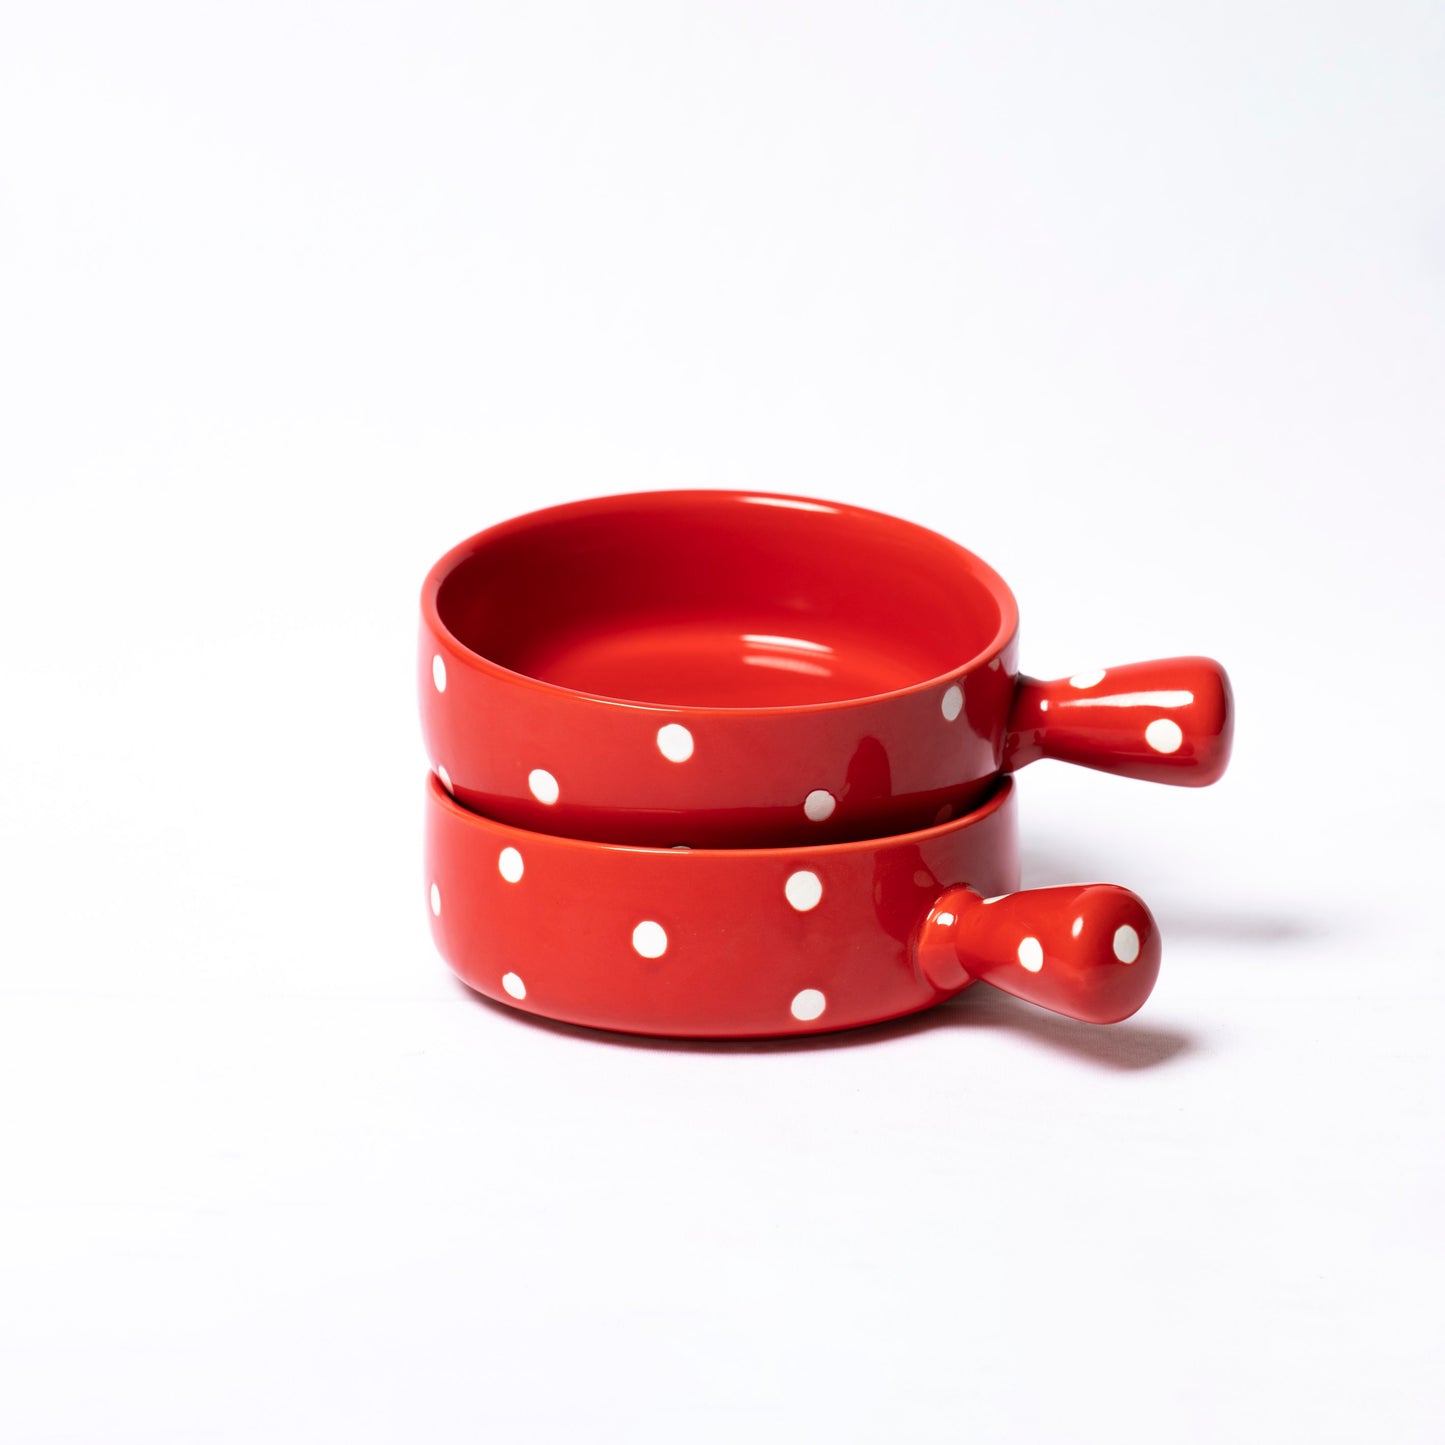 Polka Dot Bowl With Handle